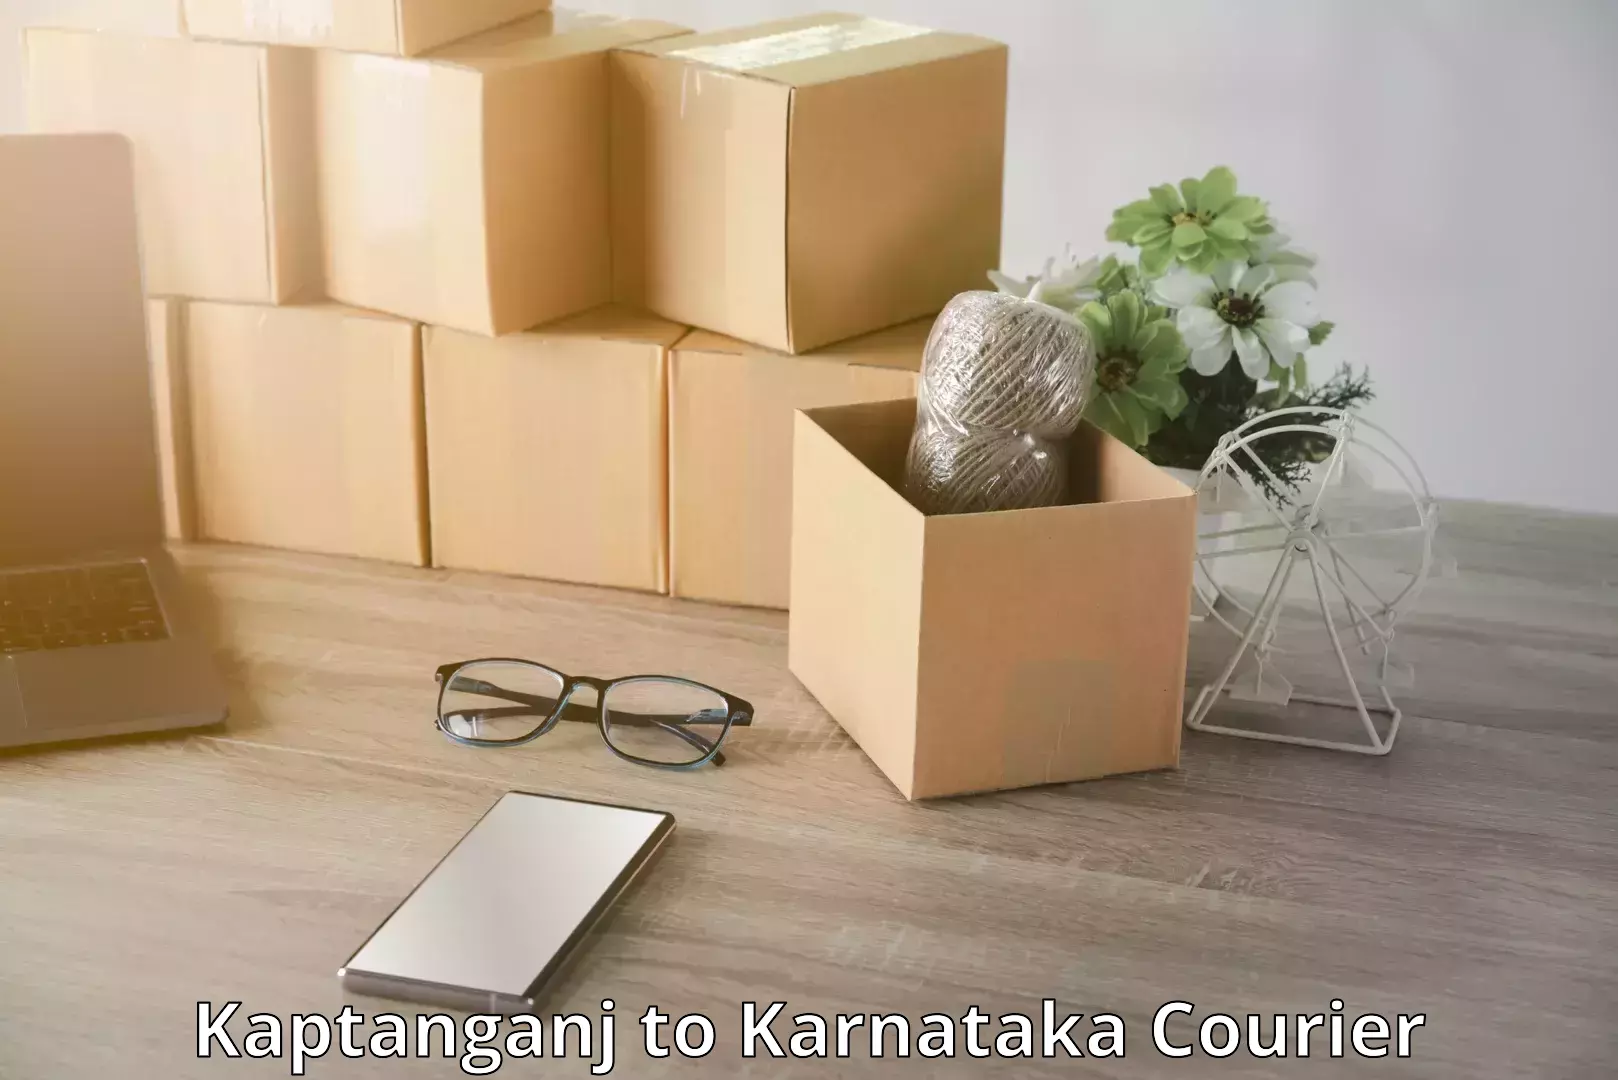 Luggage transport consultancy Kaptanganj to Karnataka